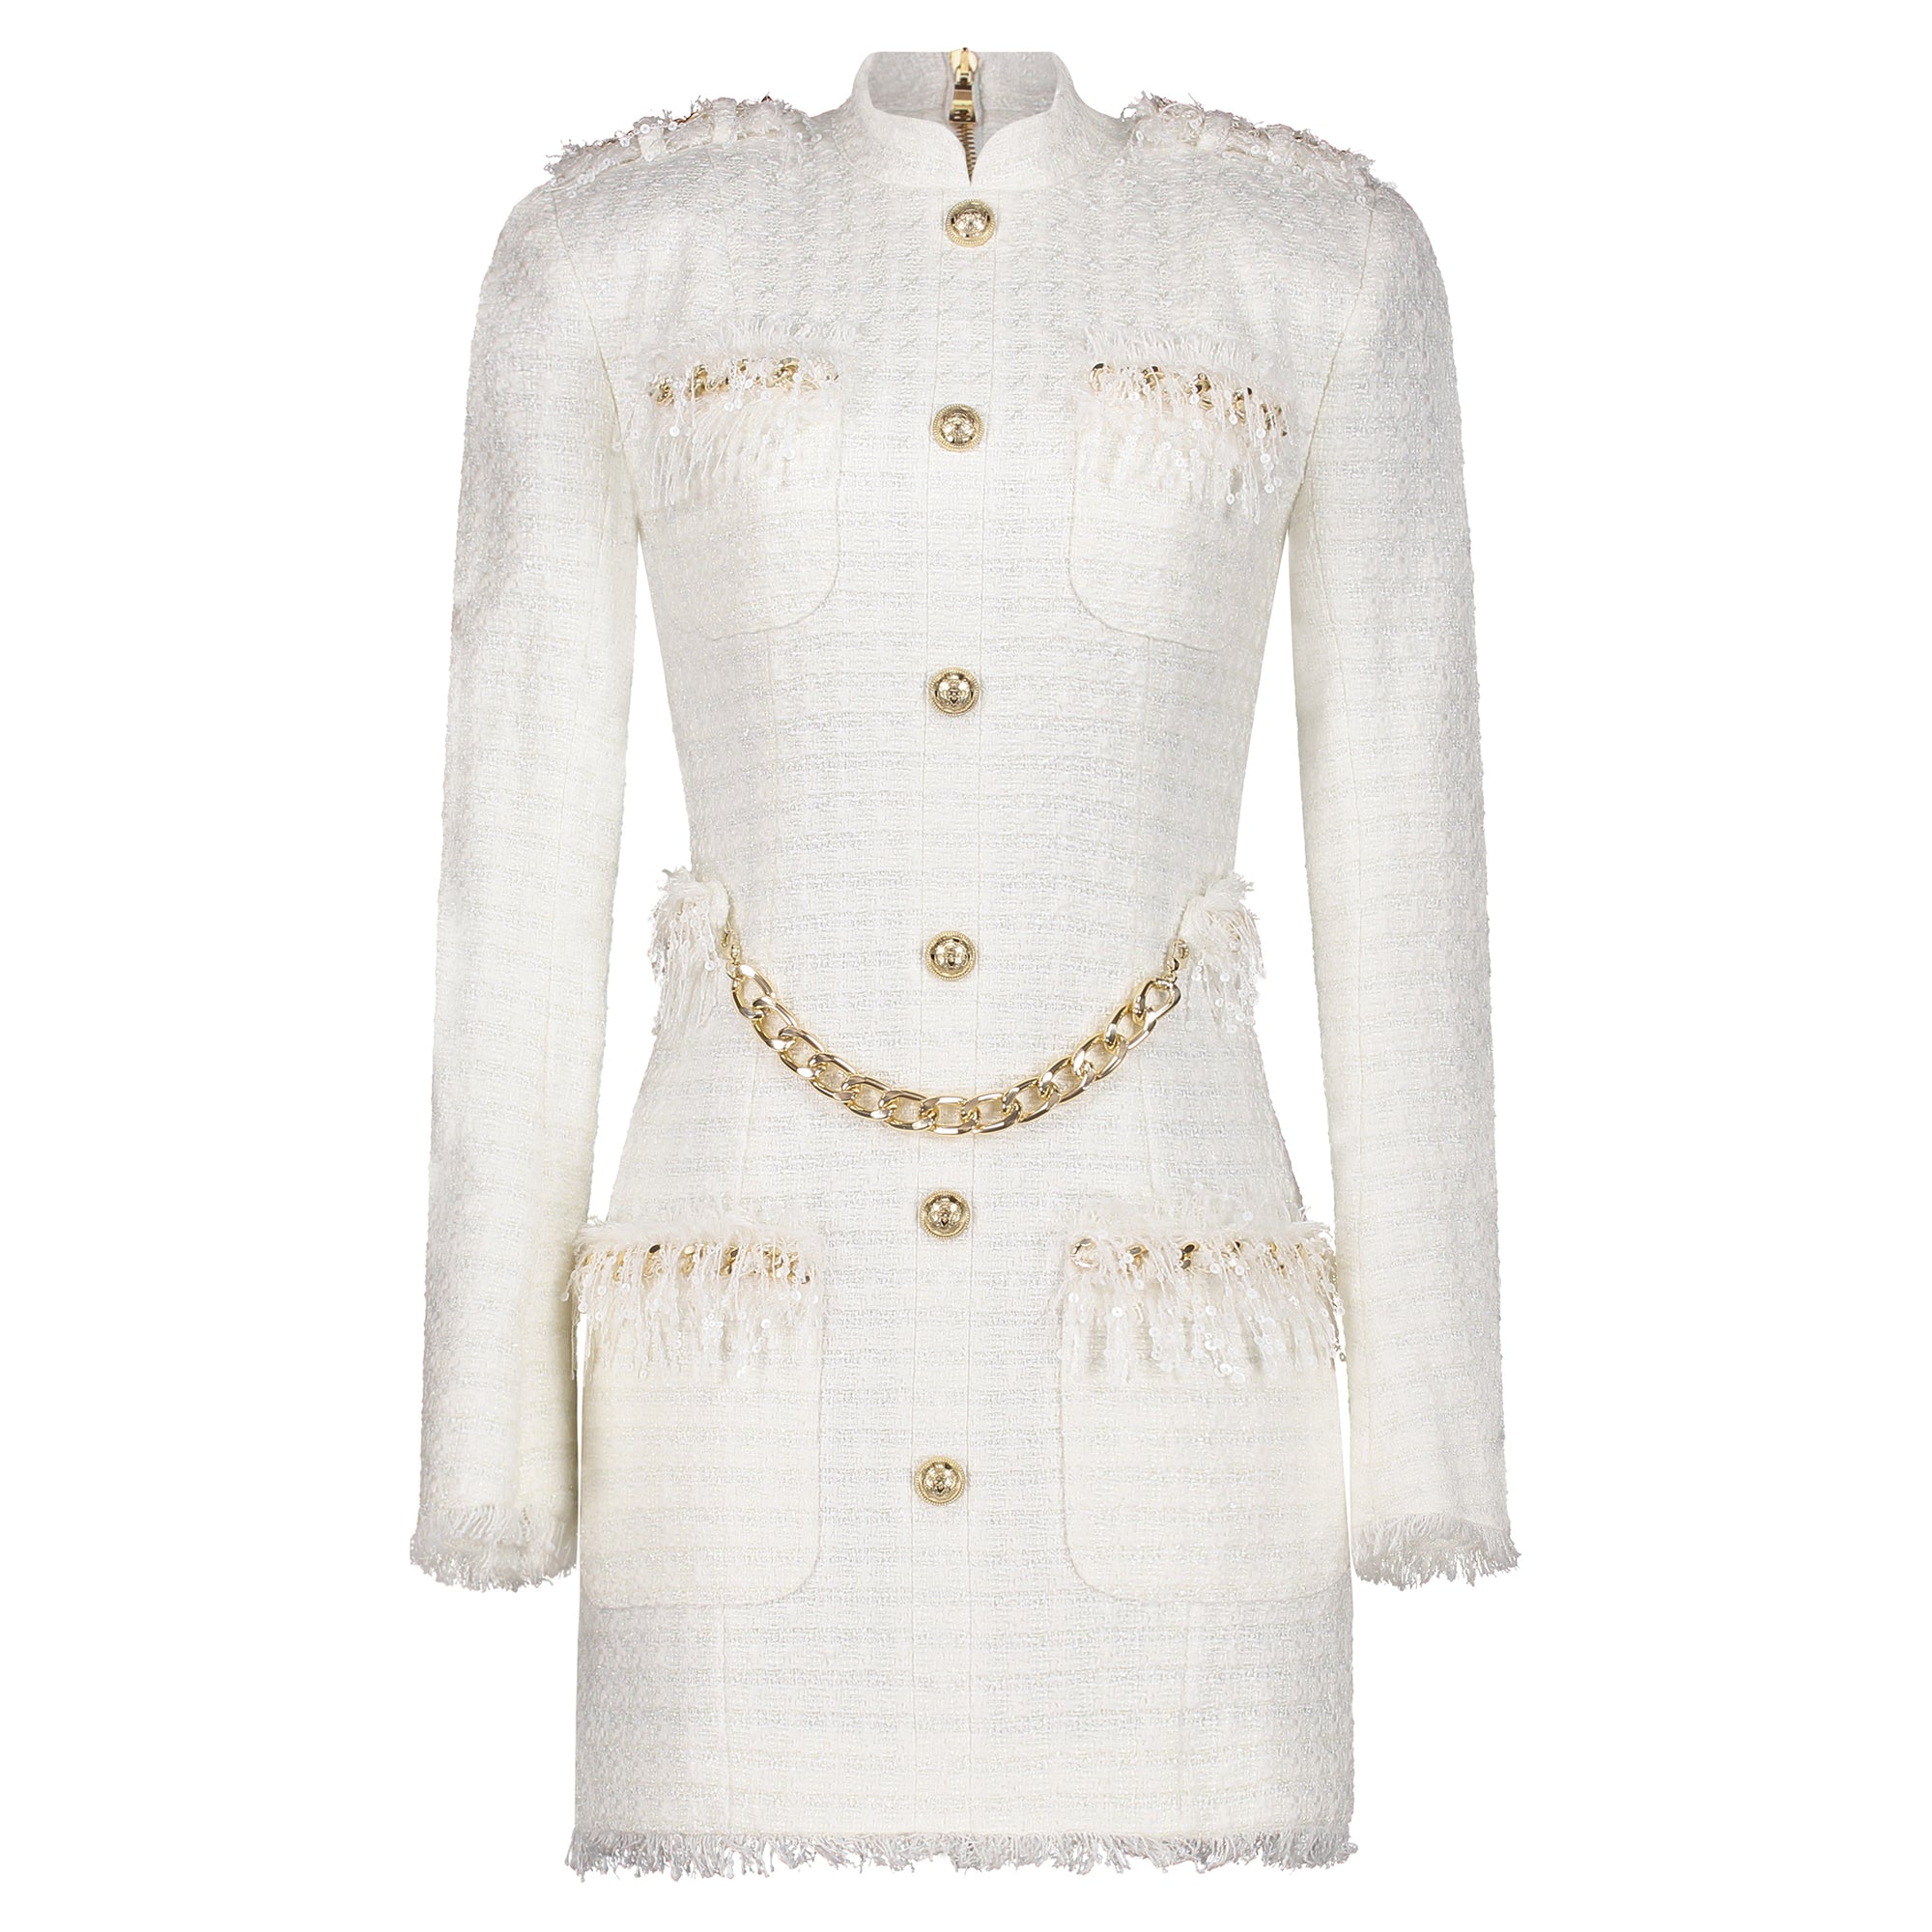 Balmain white tweed dress